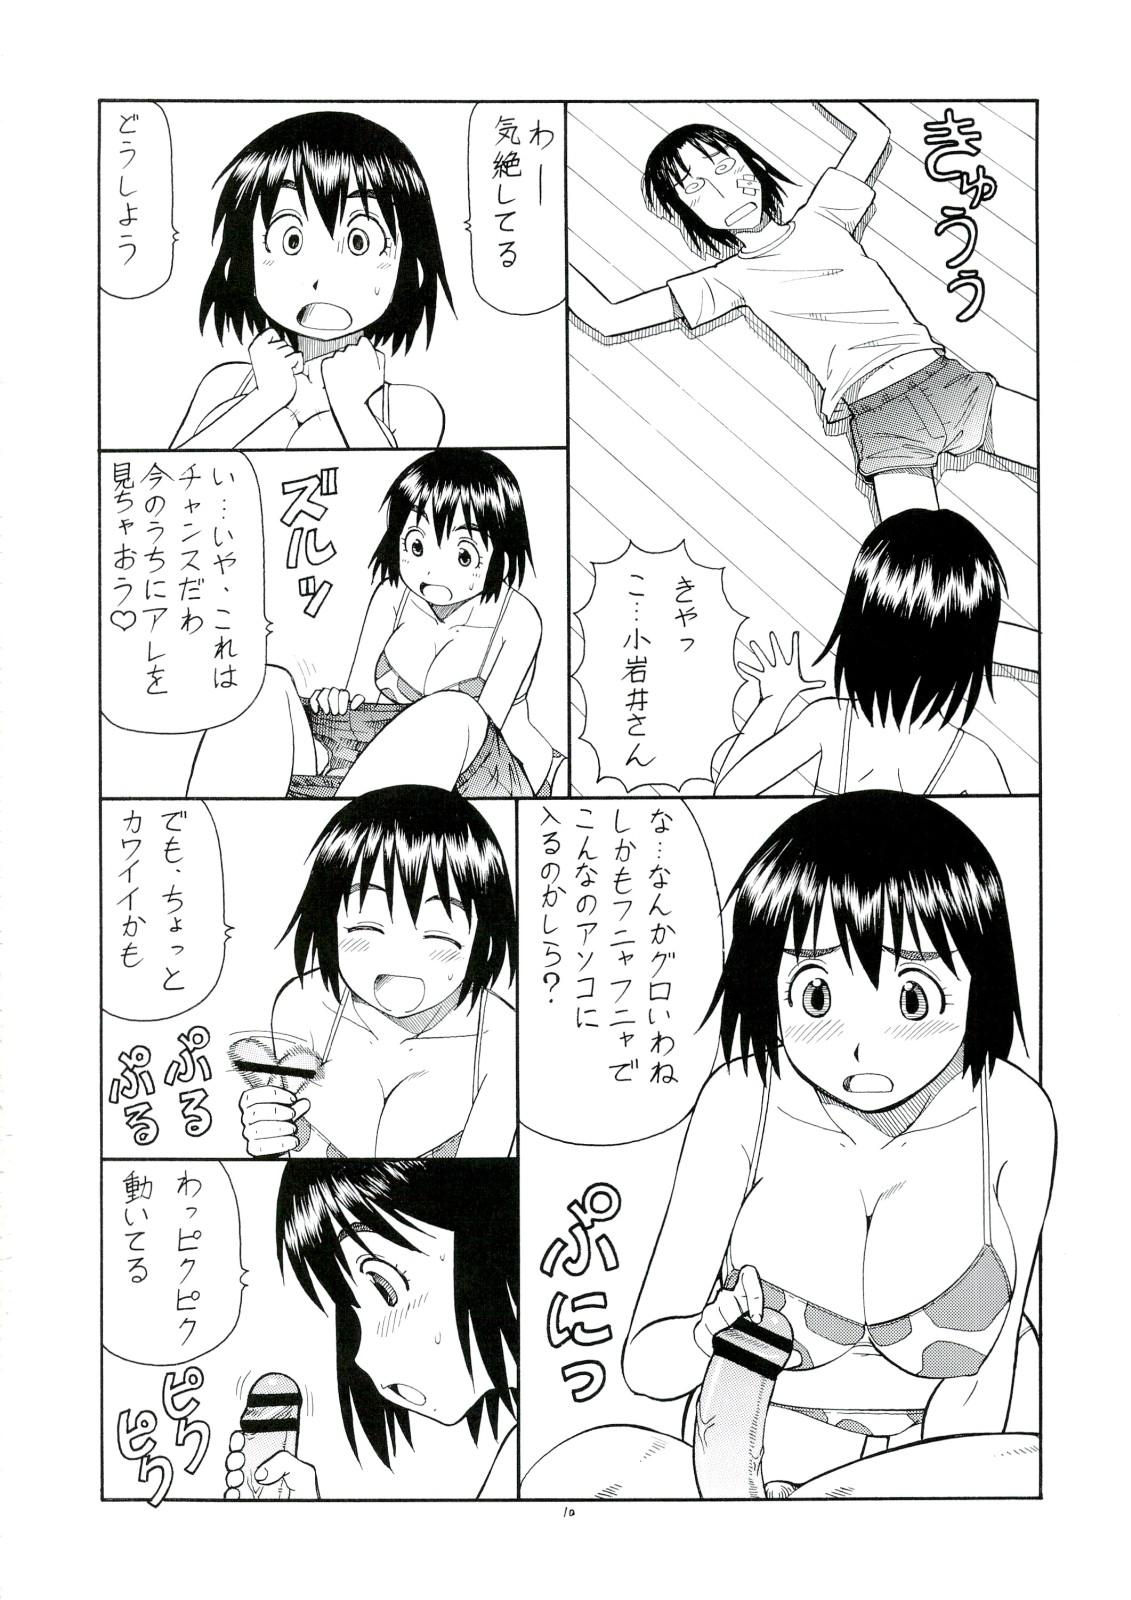 Lick Erobato FUKA - Yotsubato Footfetish - Page 11